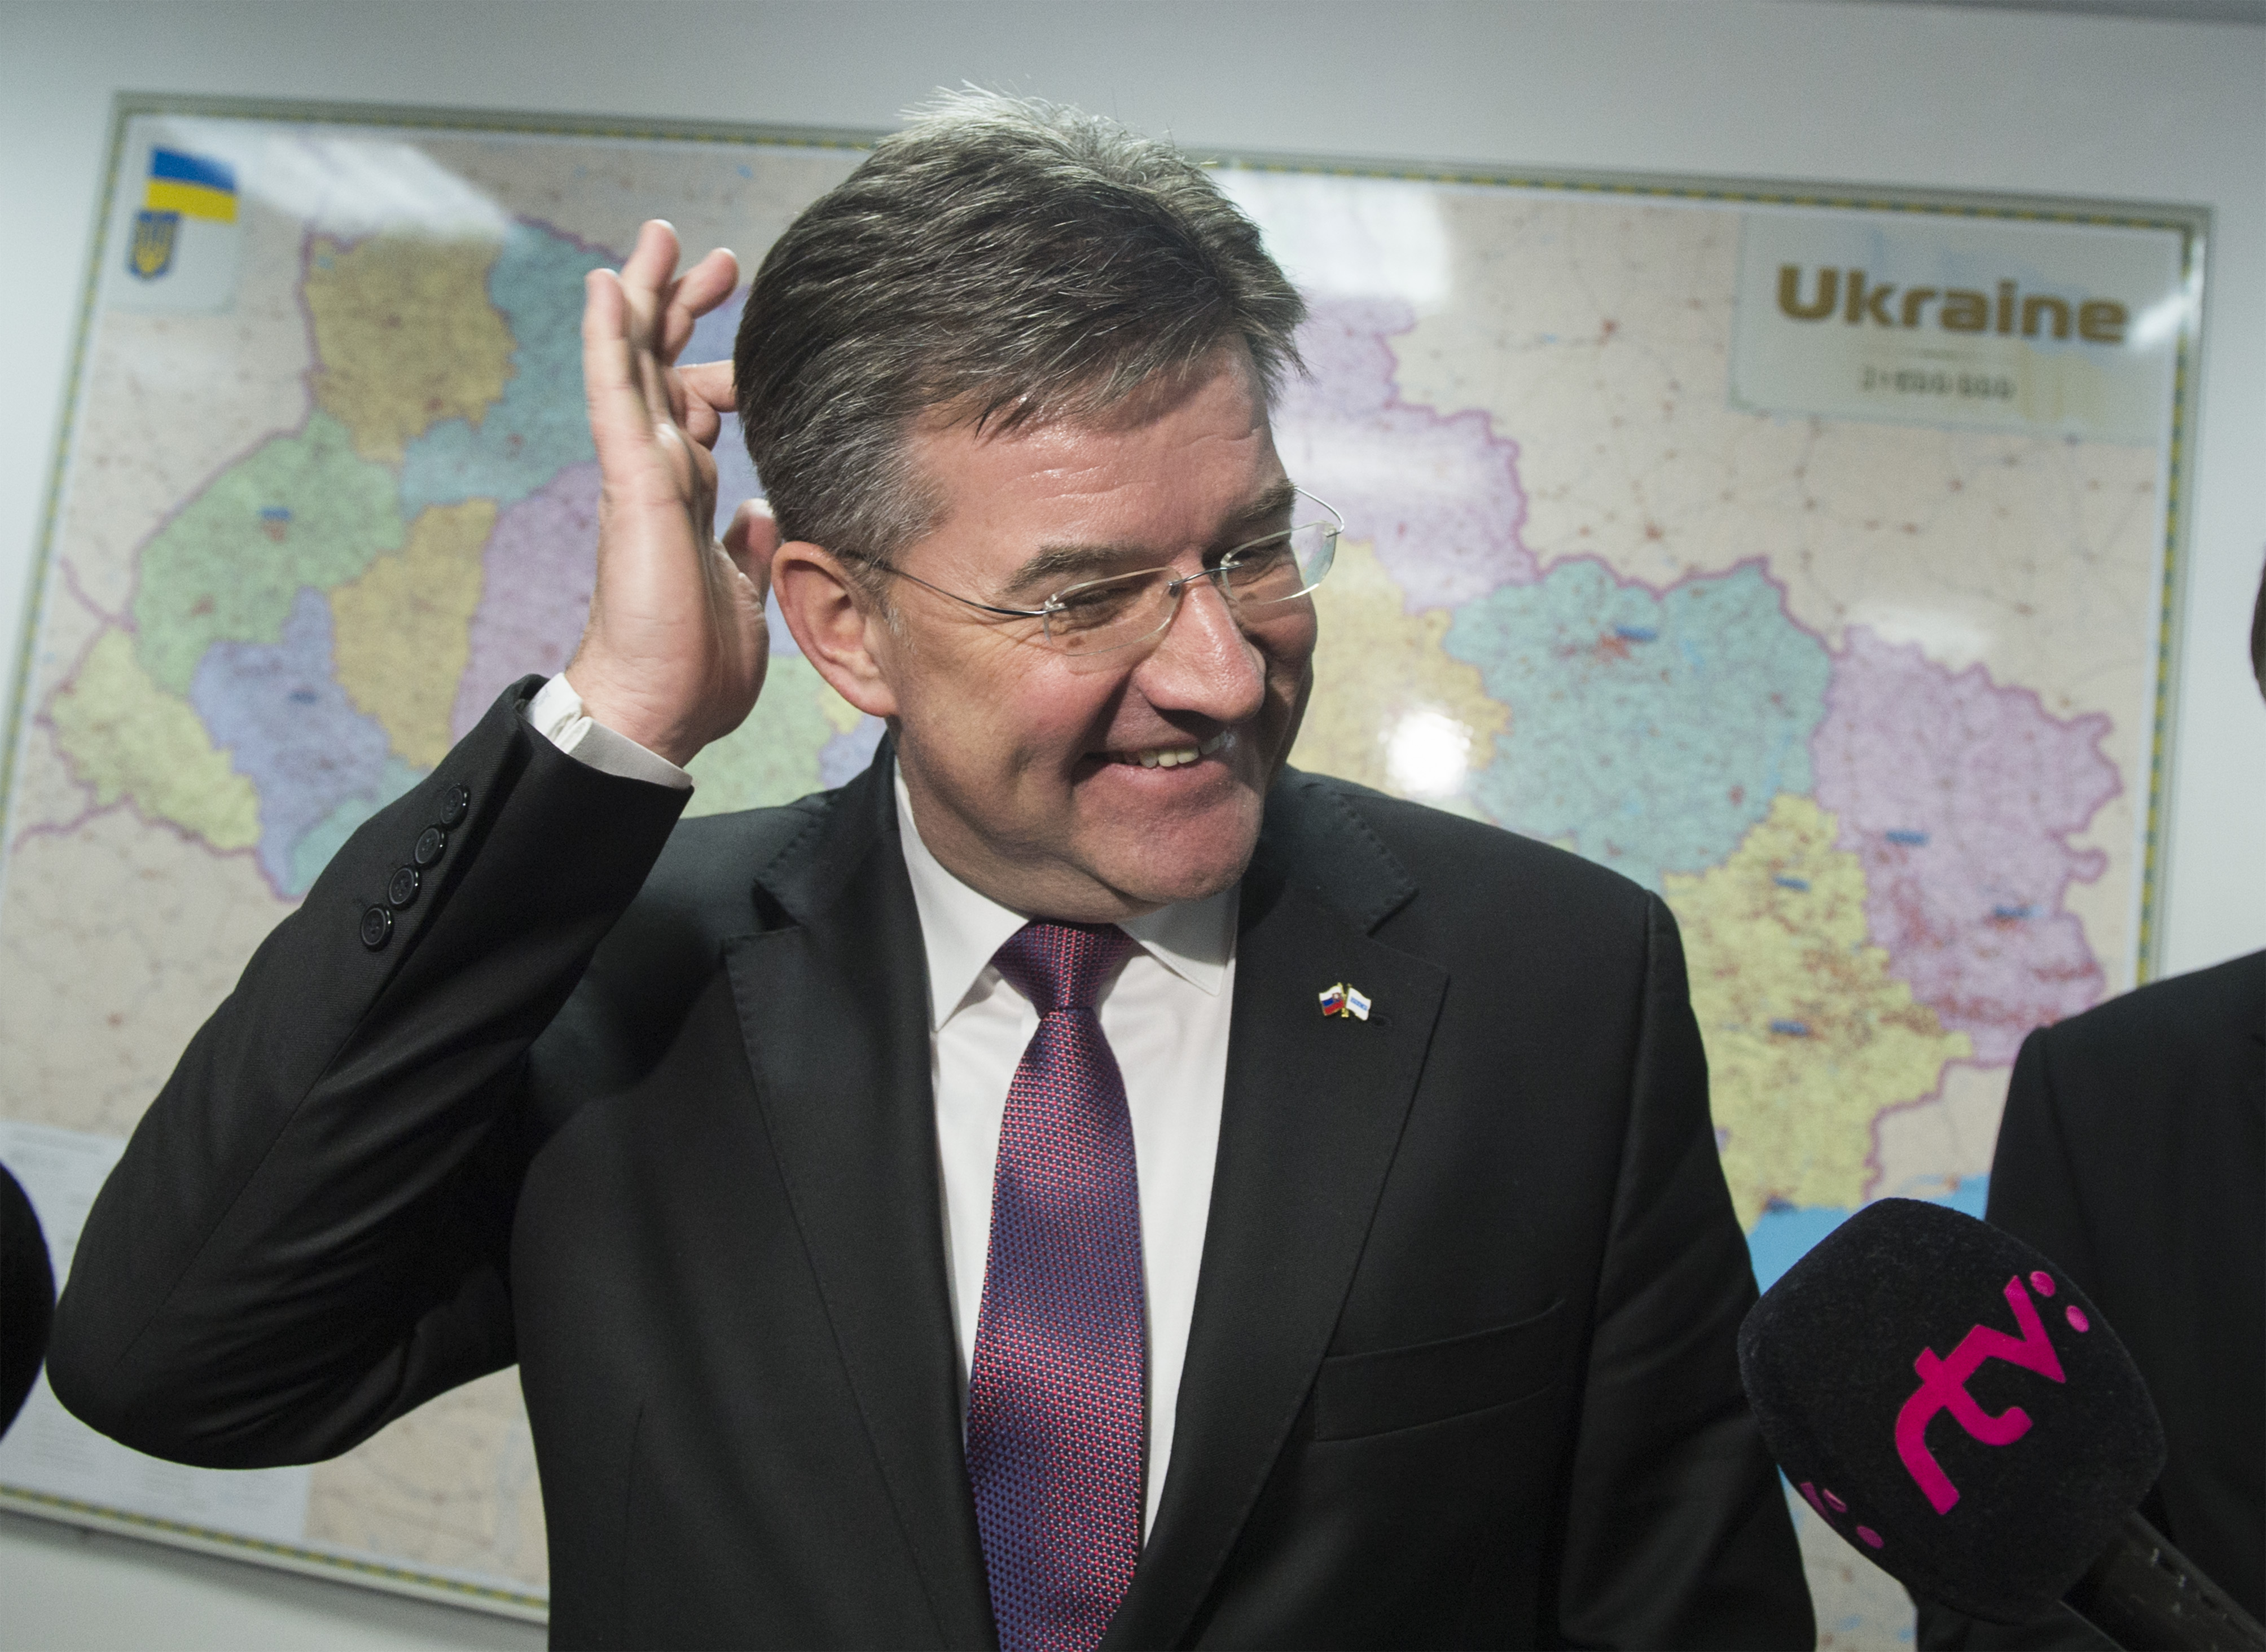 Na snímke minister zahraničných vecí SR Miroslav Lajčák vo funkcii úradujúceho predsedu OBSE  počas brífingu v rámci dvojdňovej návštevy Ukrajiny v Kyjeve v utorok 15. januára 2019.